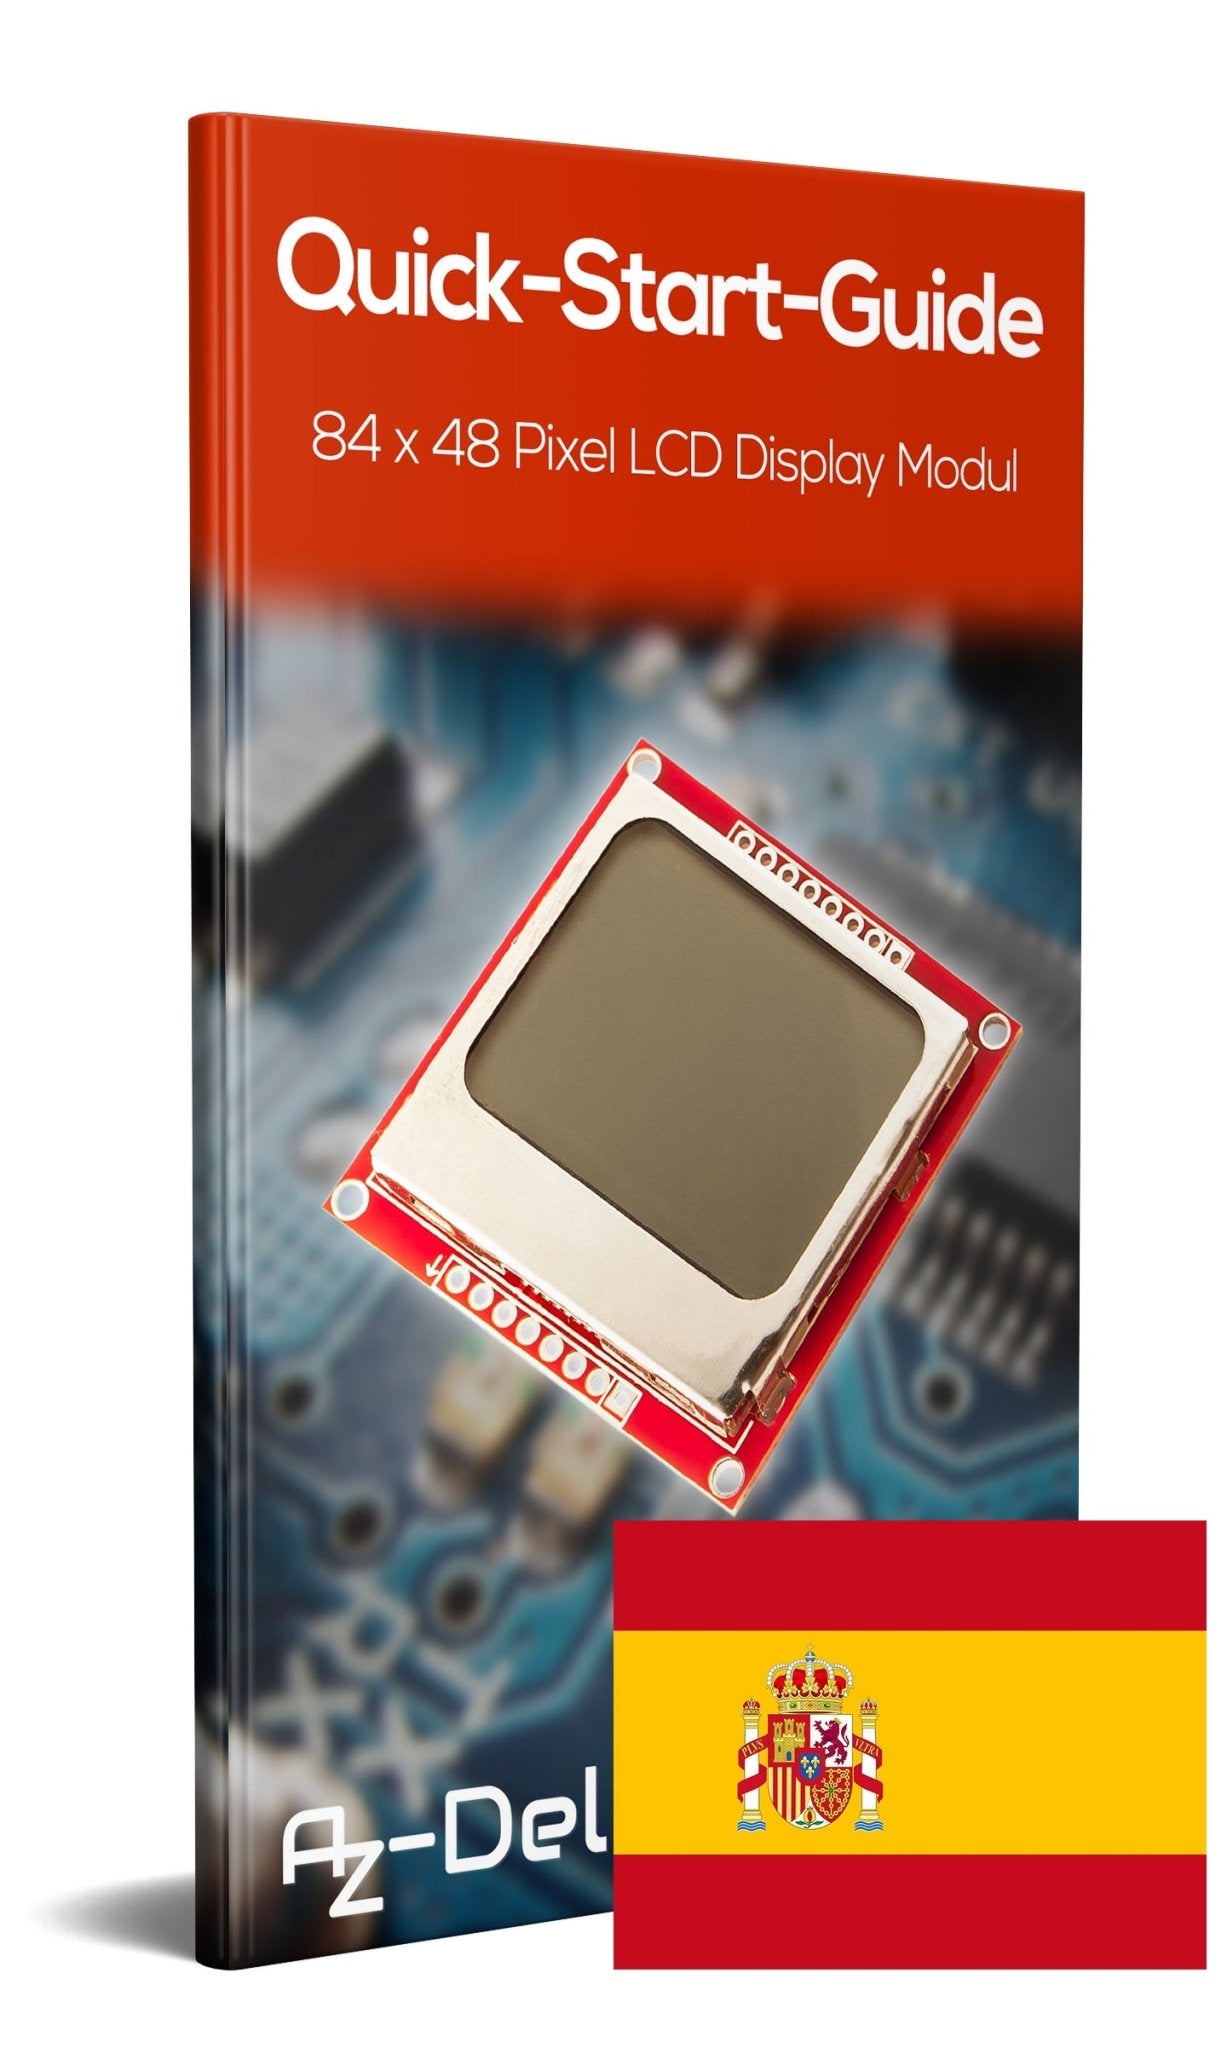 84 x 48 Pixel LCD Display Modul mit Hintergrundbeleuchtung für Nokia 5110 und Joystick PS2 Gamepad - AZ-Delivery